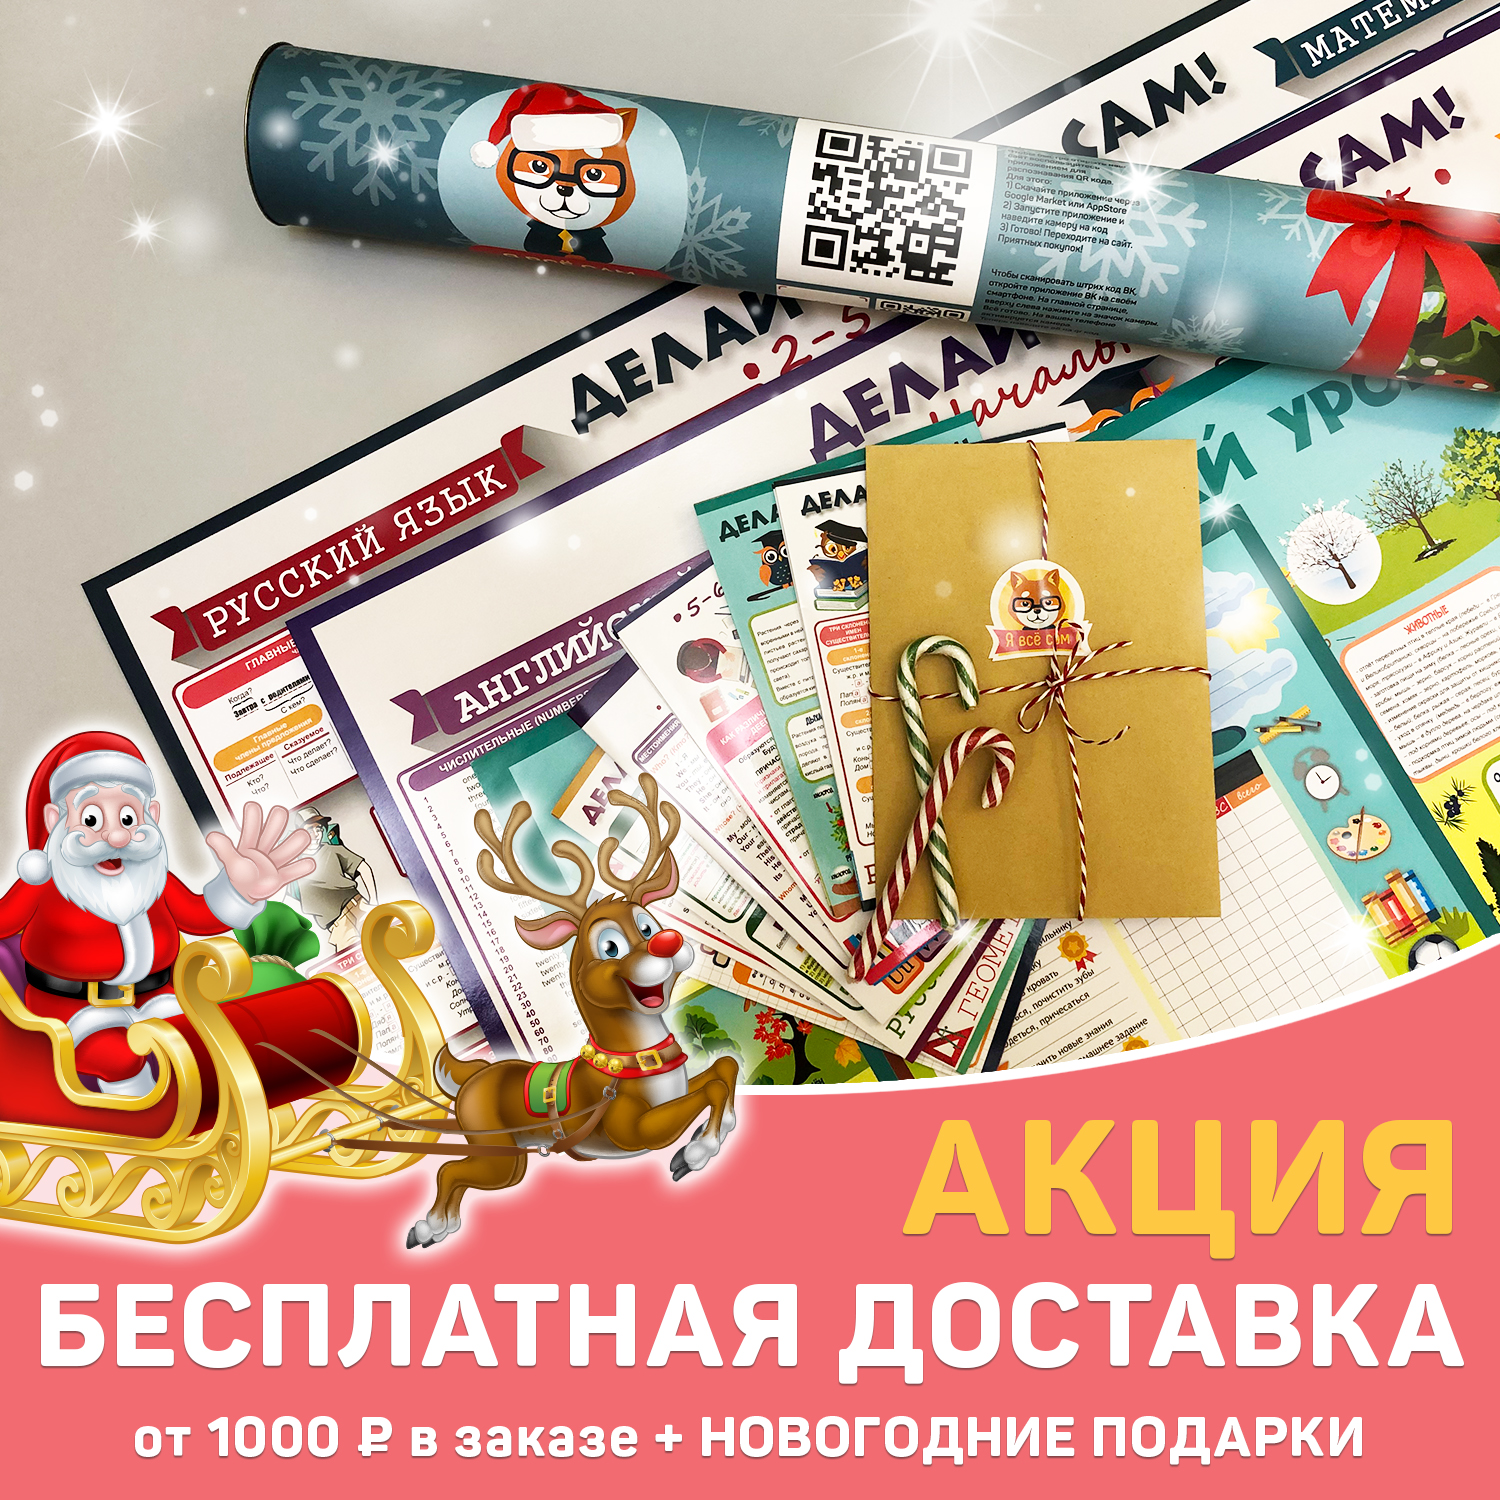 БЕСПЛАТНАЯ доставка при заказе от 1000 руб. + новогодние подарки каждому